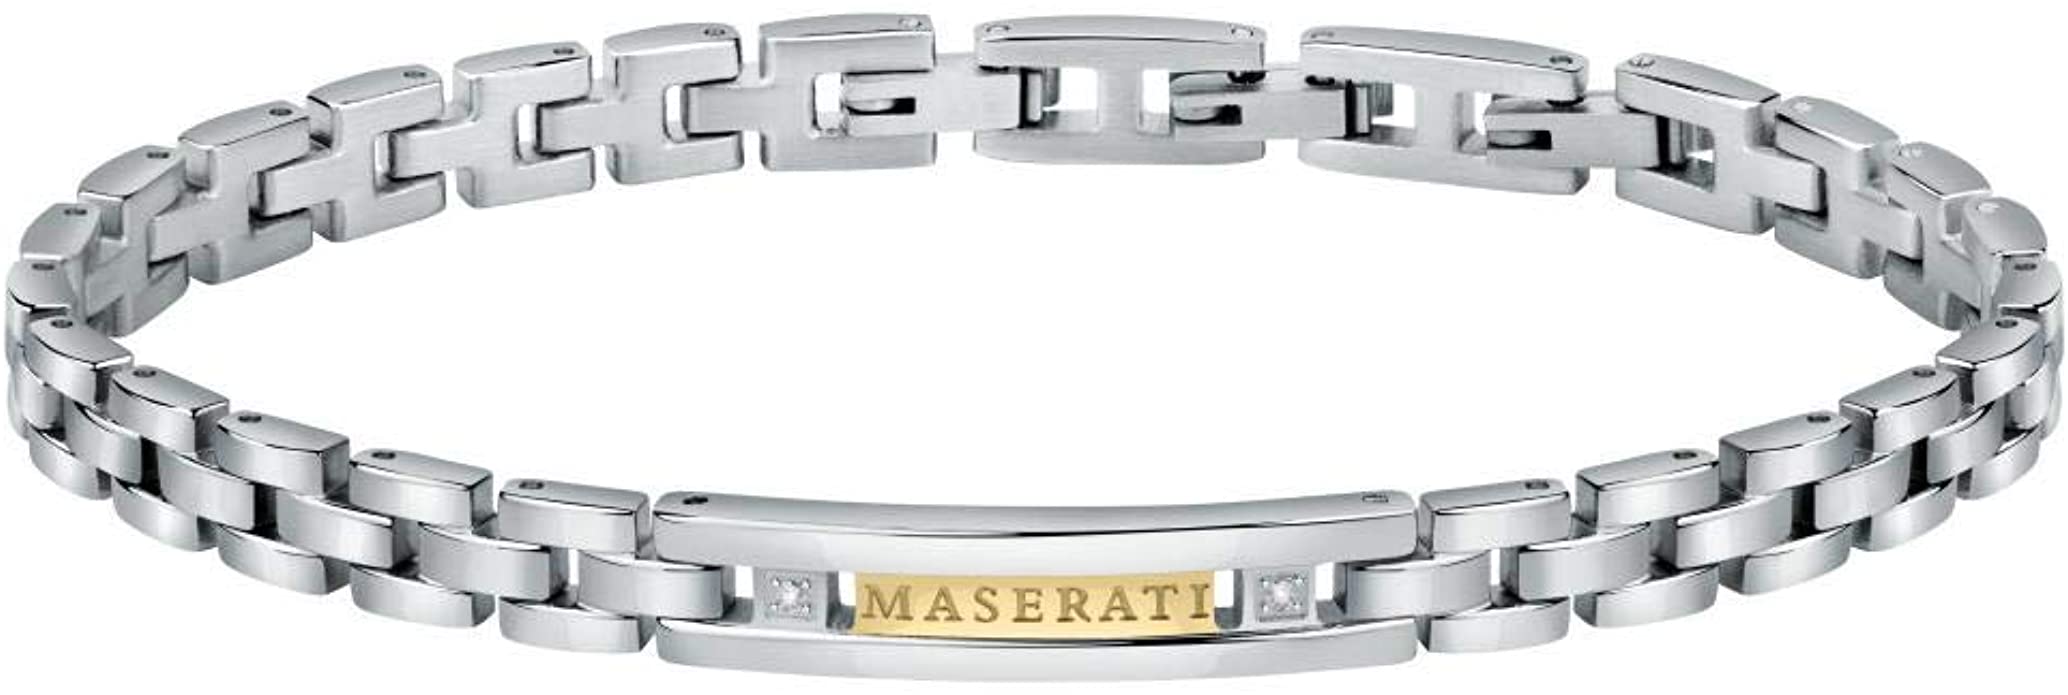 Maserati Bracciale Uomo, Collezione JEWELS, in Acciaio, PVD Oro, Diamanti - JM221ATY03
